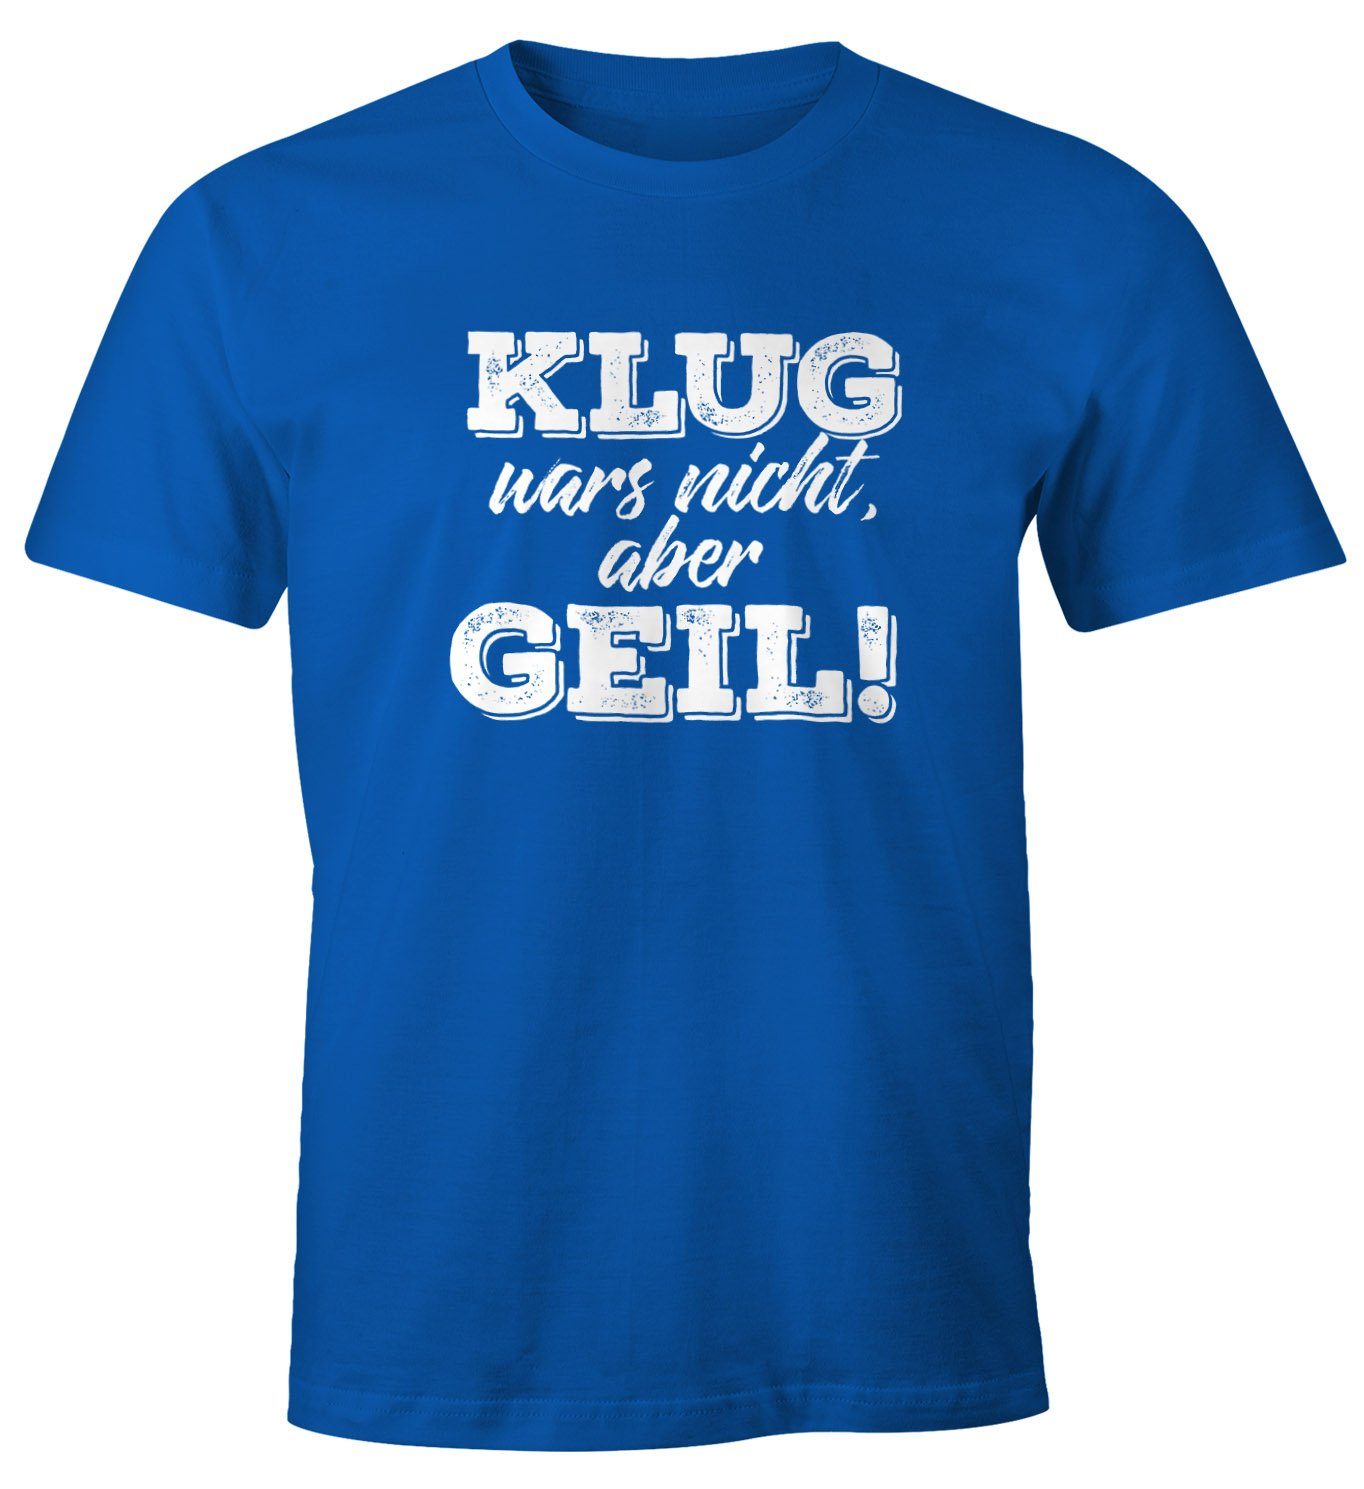 MoonWorks Print-Shirt Klug geil Print blau Moonworks® Fun-Shirt aber T-Shirt mit Herren mit nicht wars Spruch